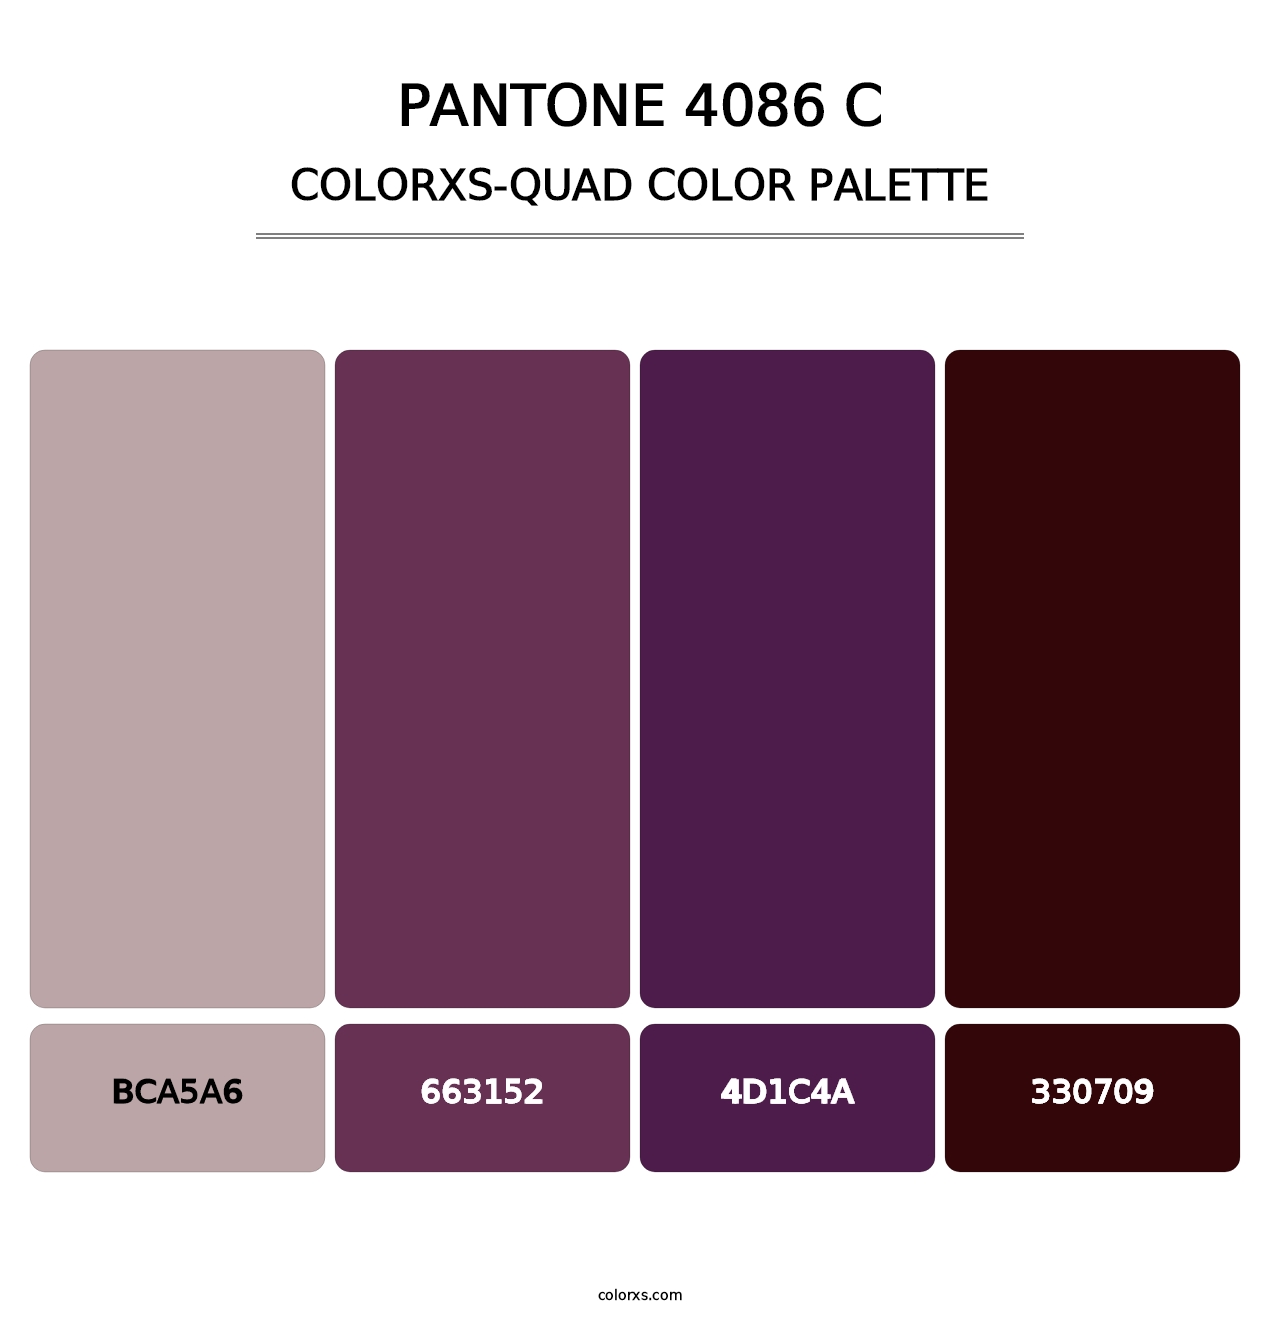 PANTONE 4086 C - Colorxs Quad Palette